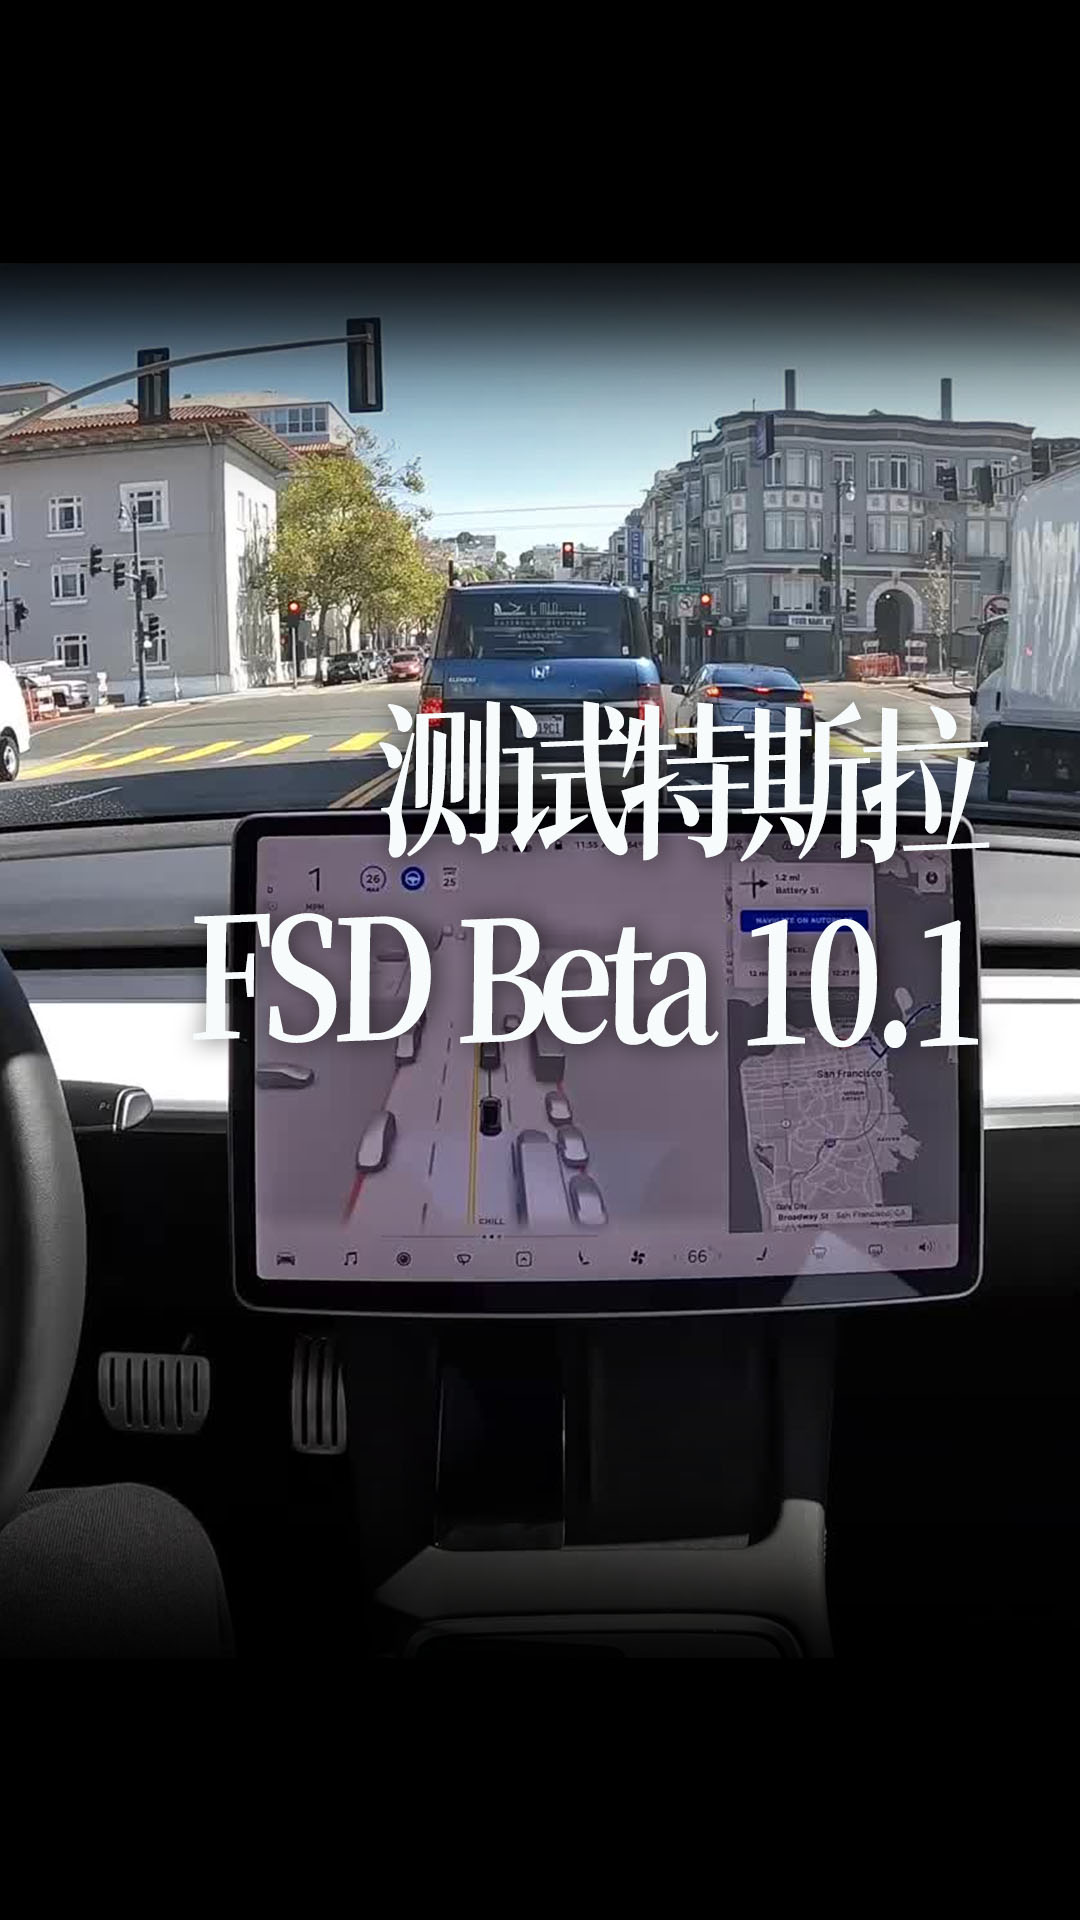 测试特斯拉FSD Beta 10.1穿过旧金山到达海湾大桥